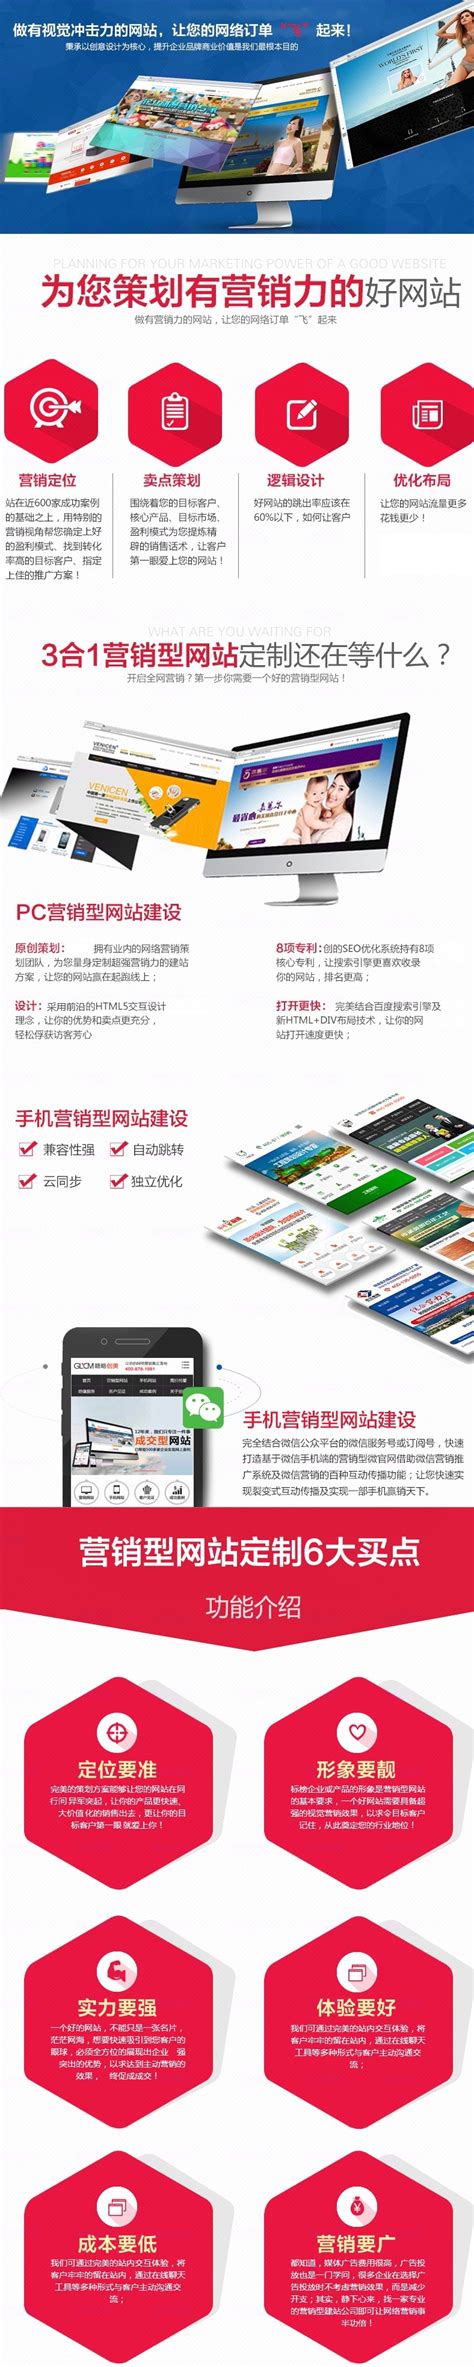 国佳光电_为国佳光电打造营销型网站建设-中工互联深圳网站建设